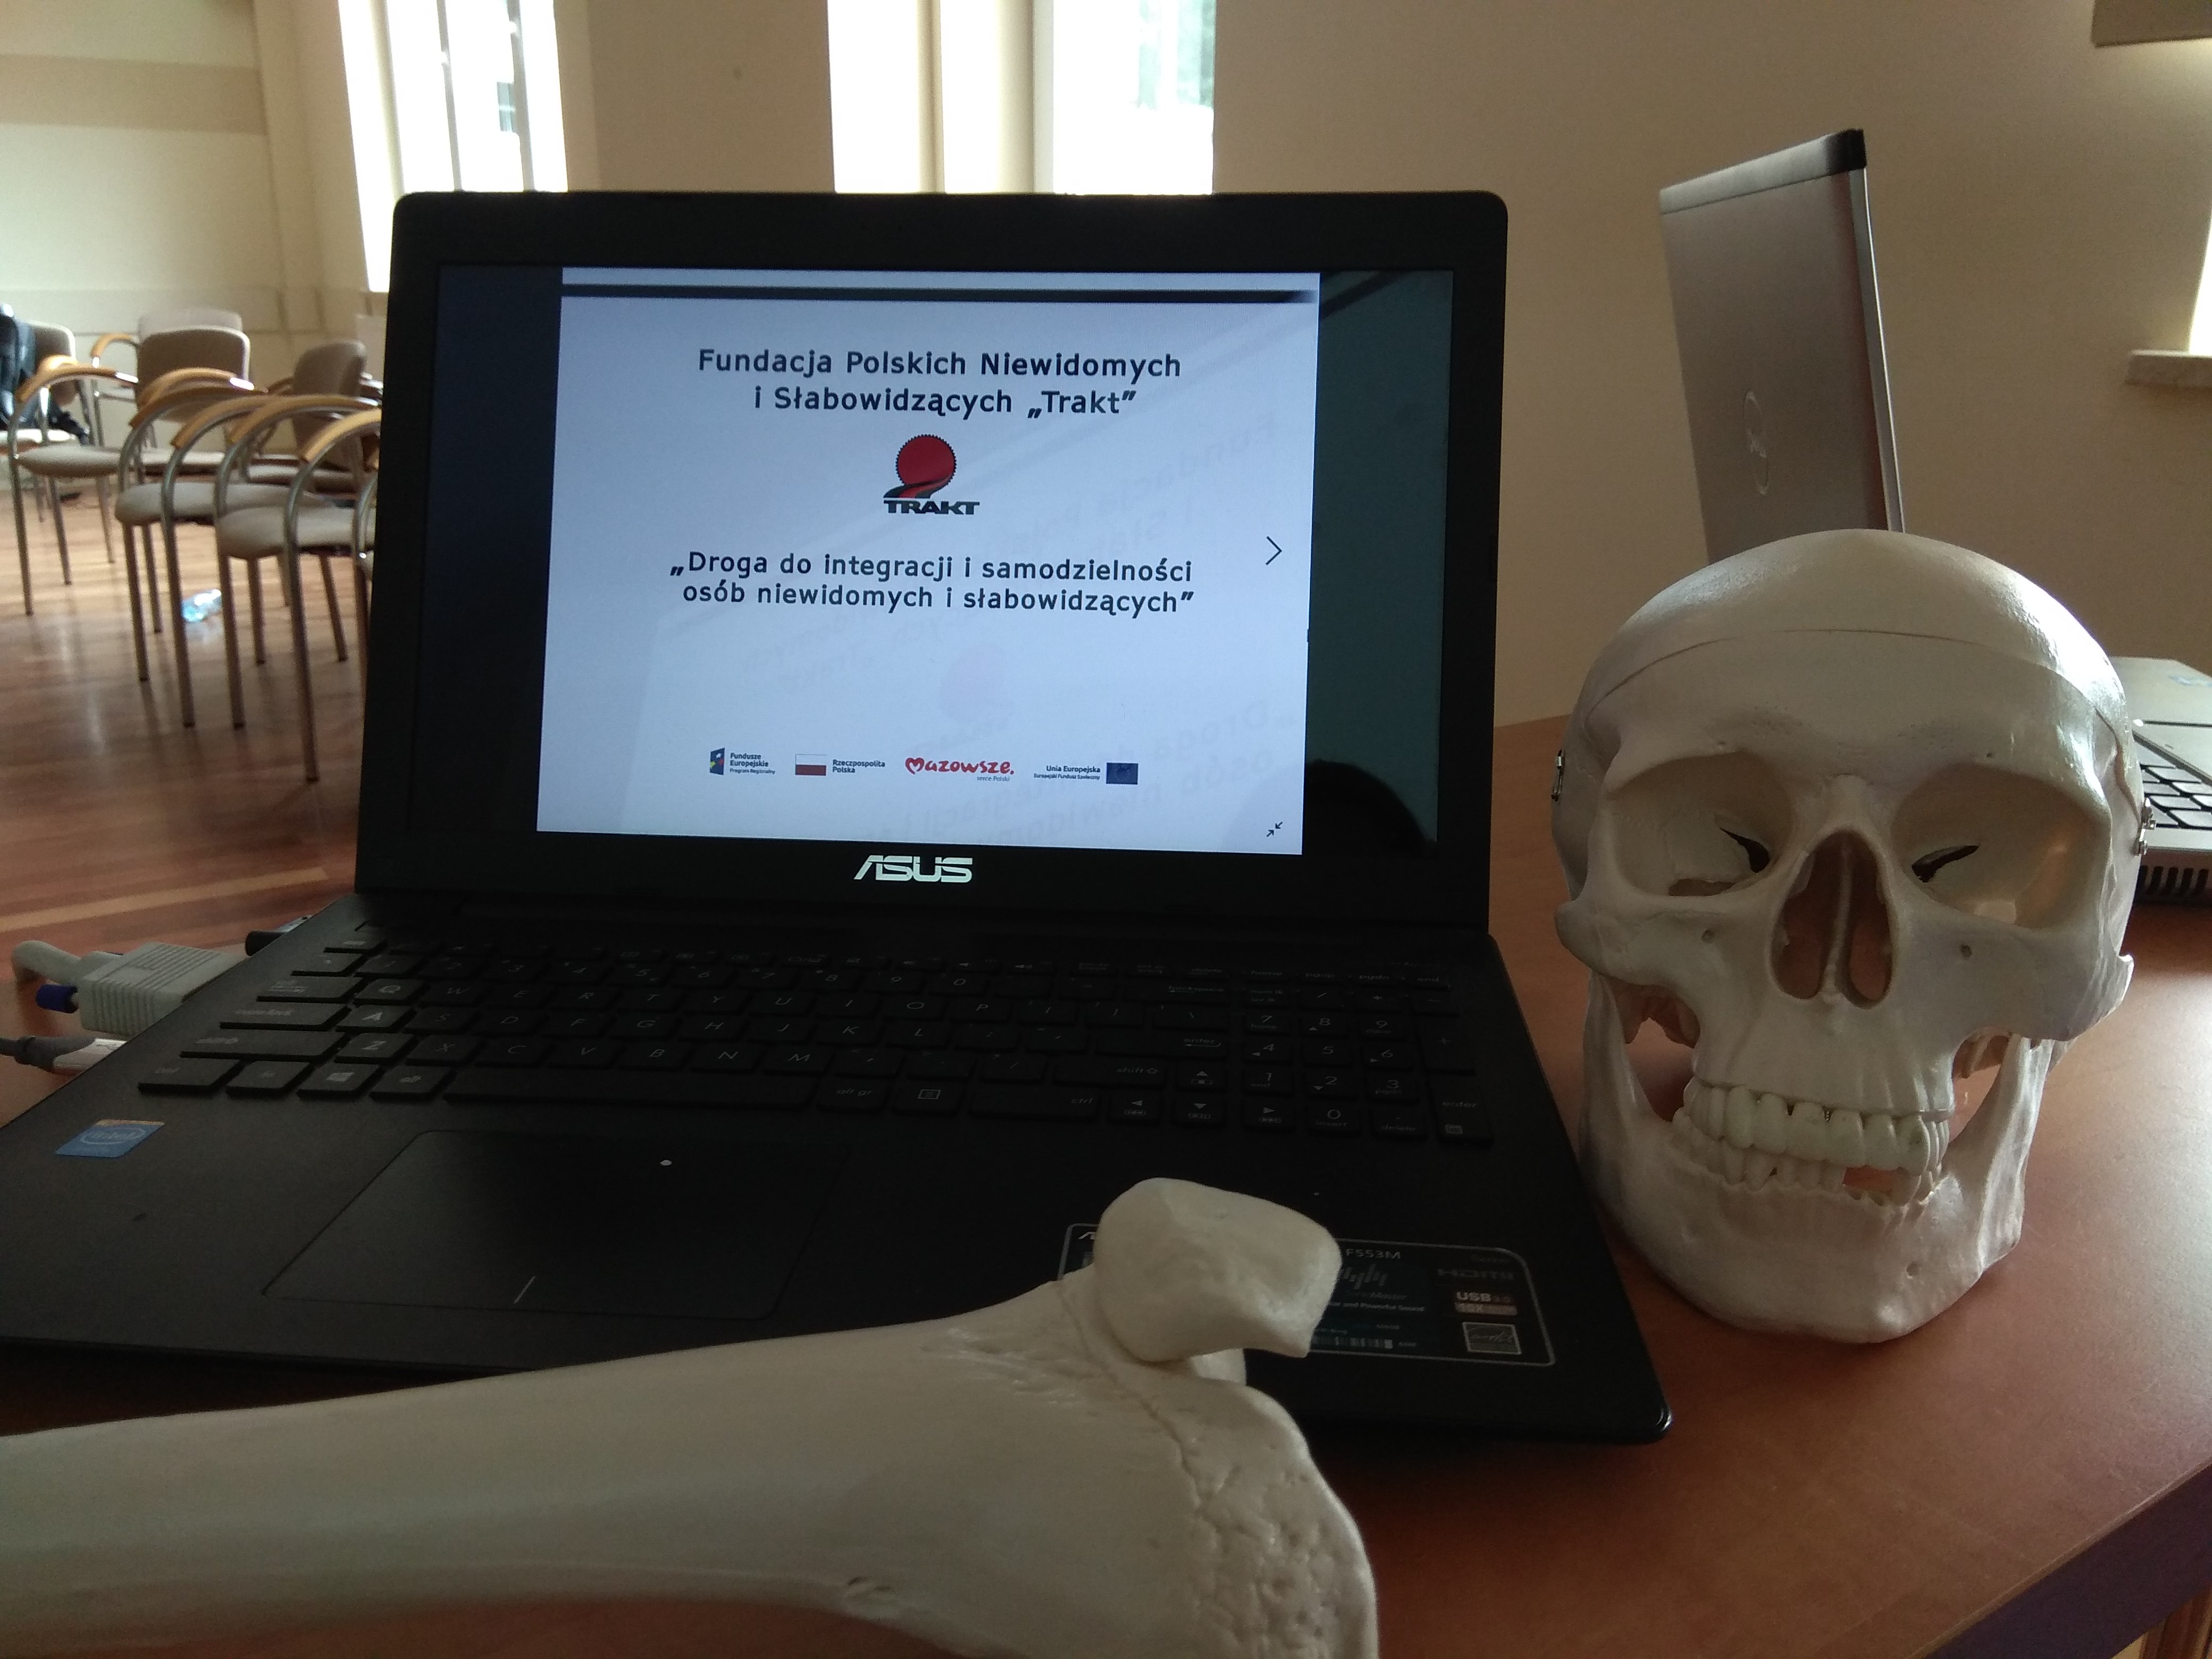 Zbliżenie na laptop z wyświetlonym na ekranie logo fundacji, a obok niego z prawej strony widoczny model czaszki.